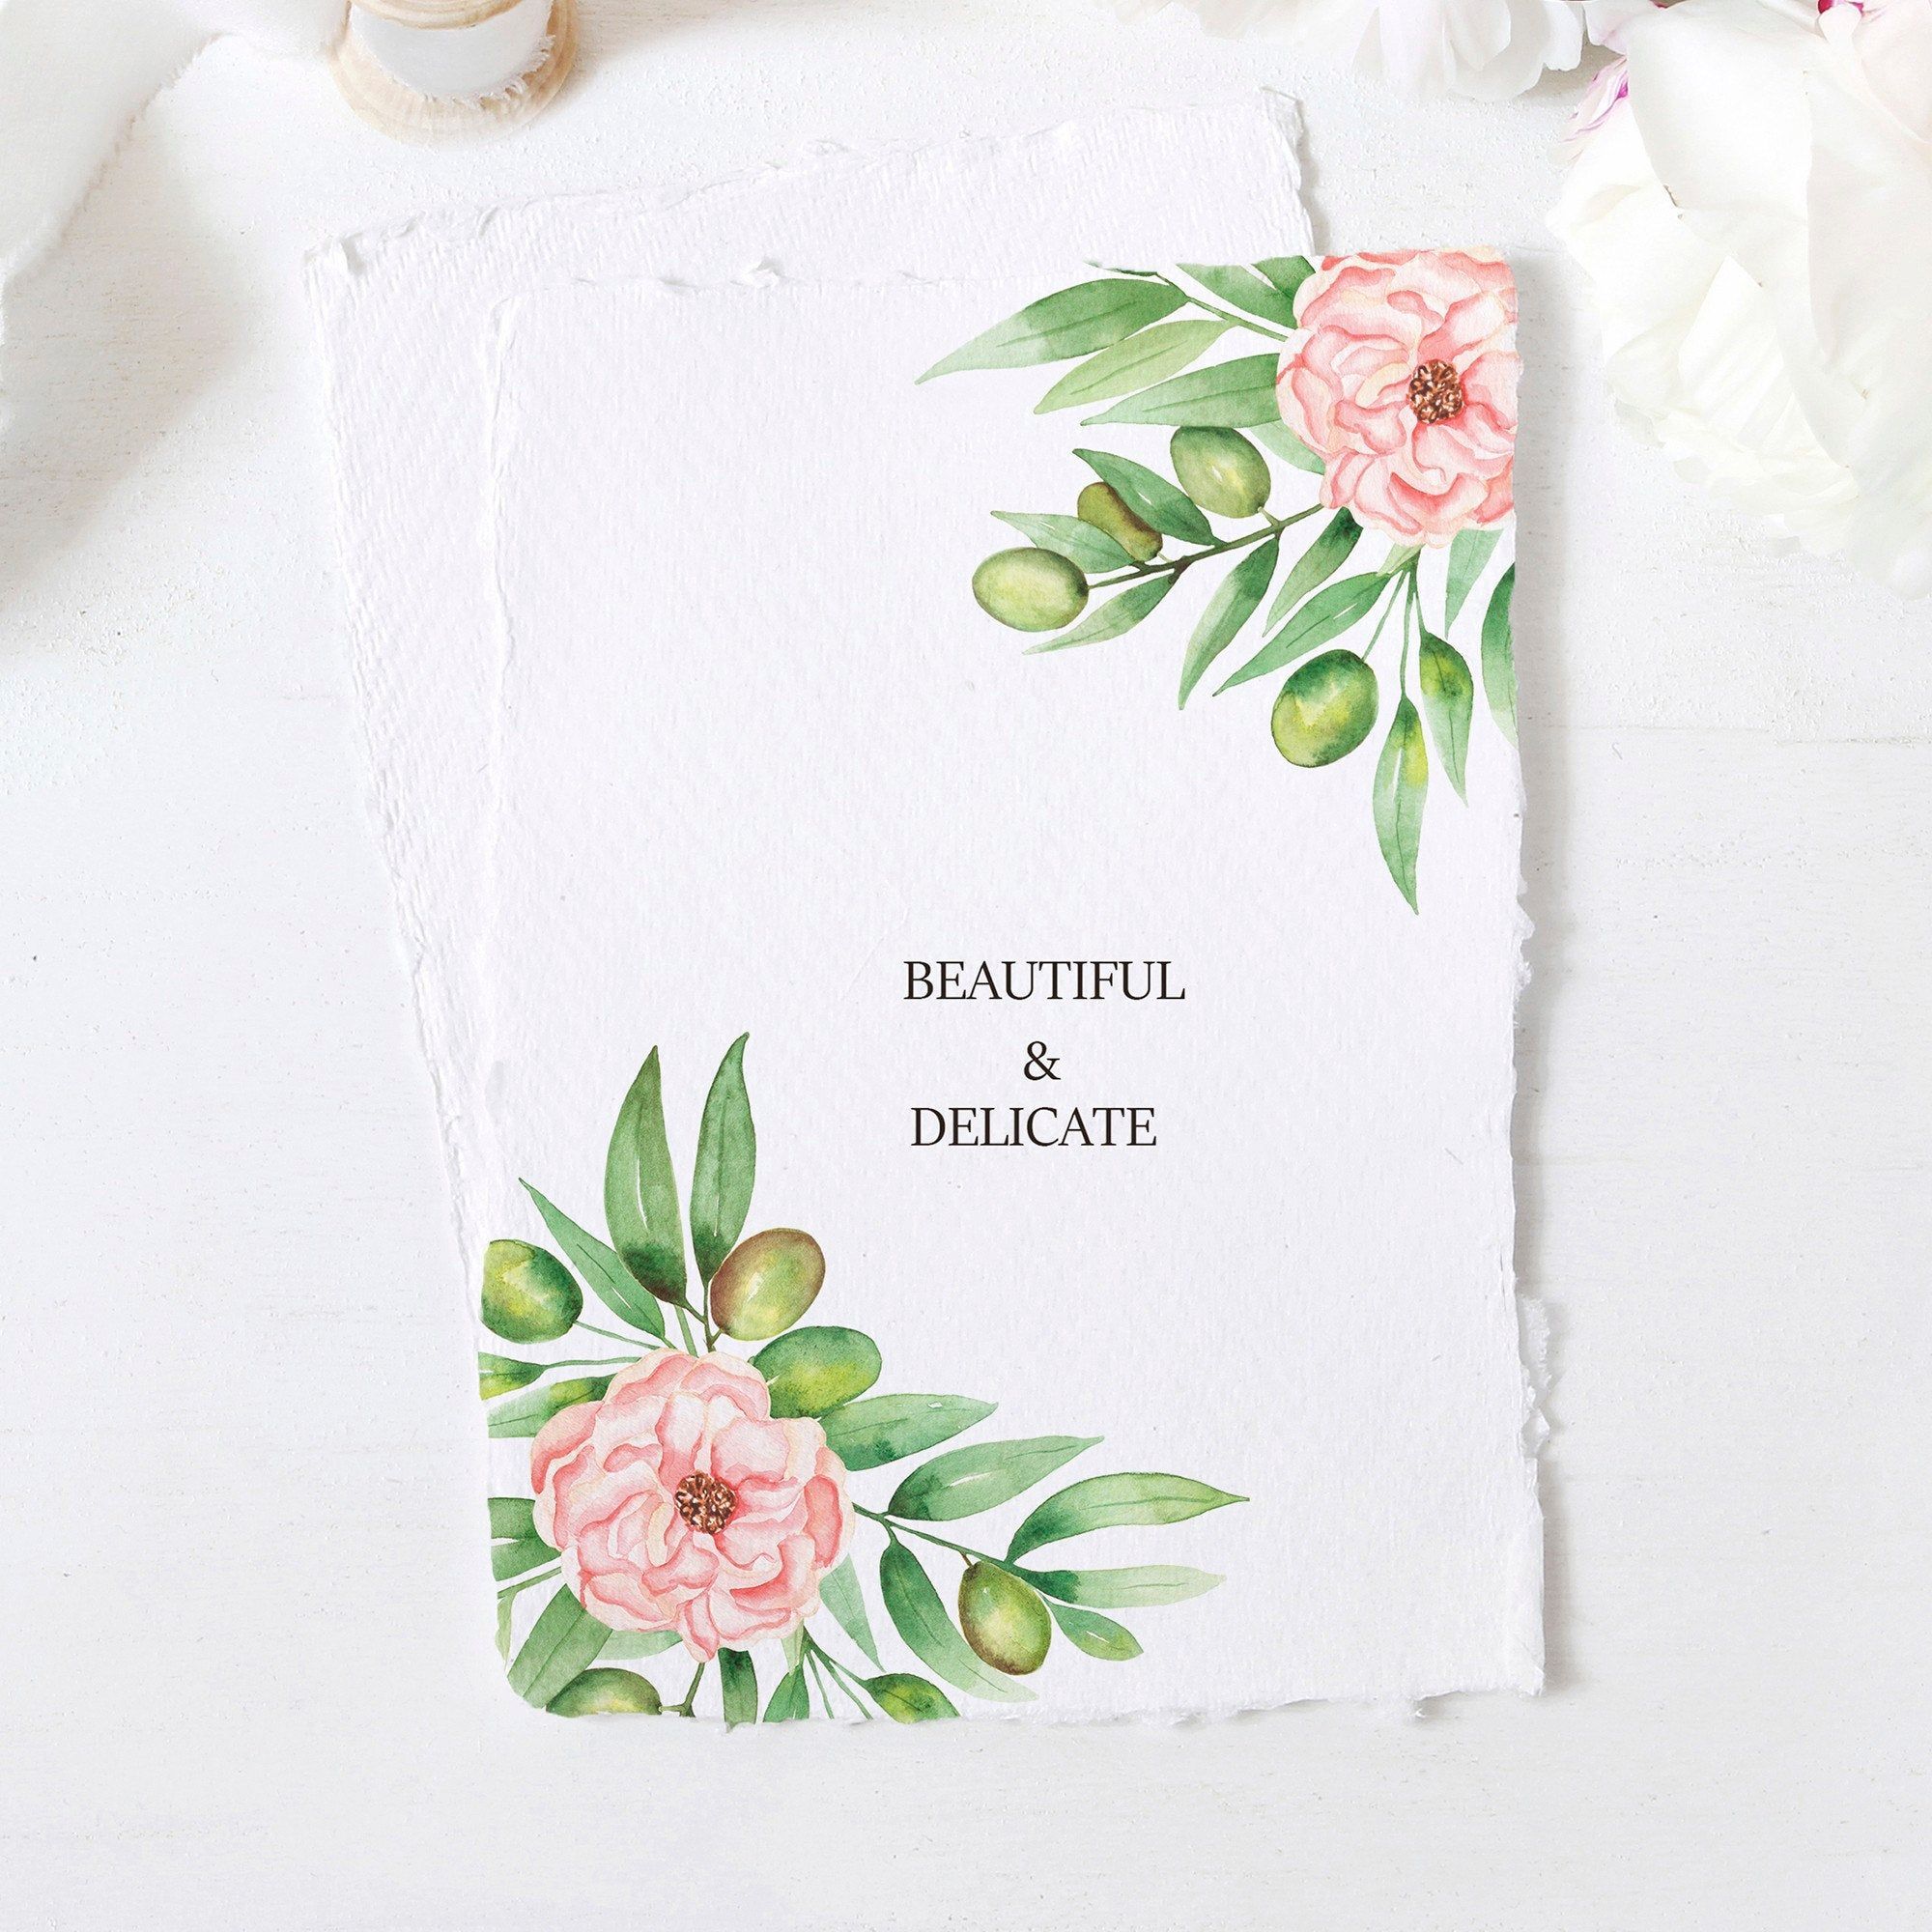 15 wedding Card watercolor ideas